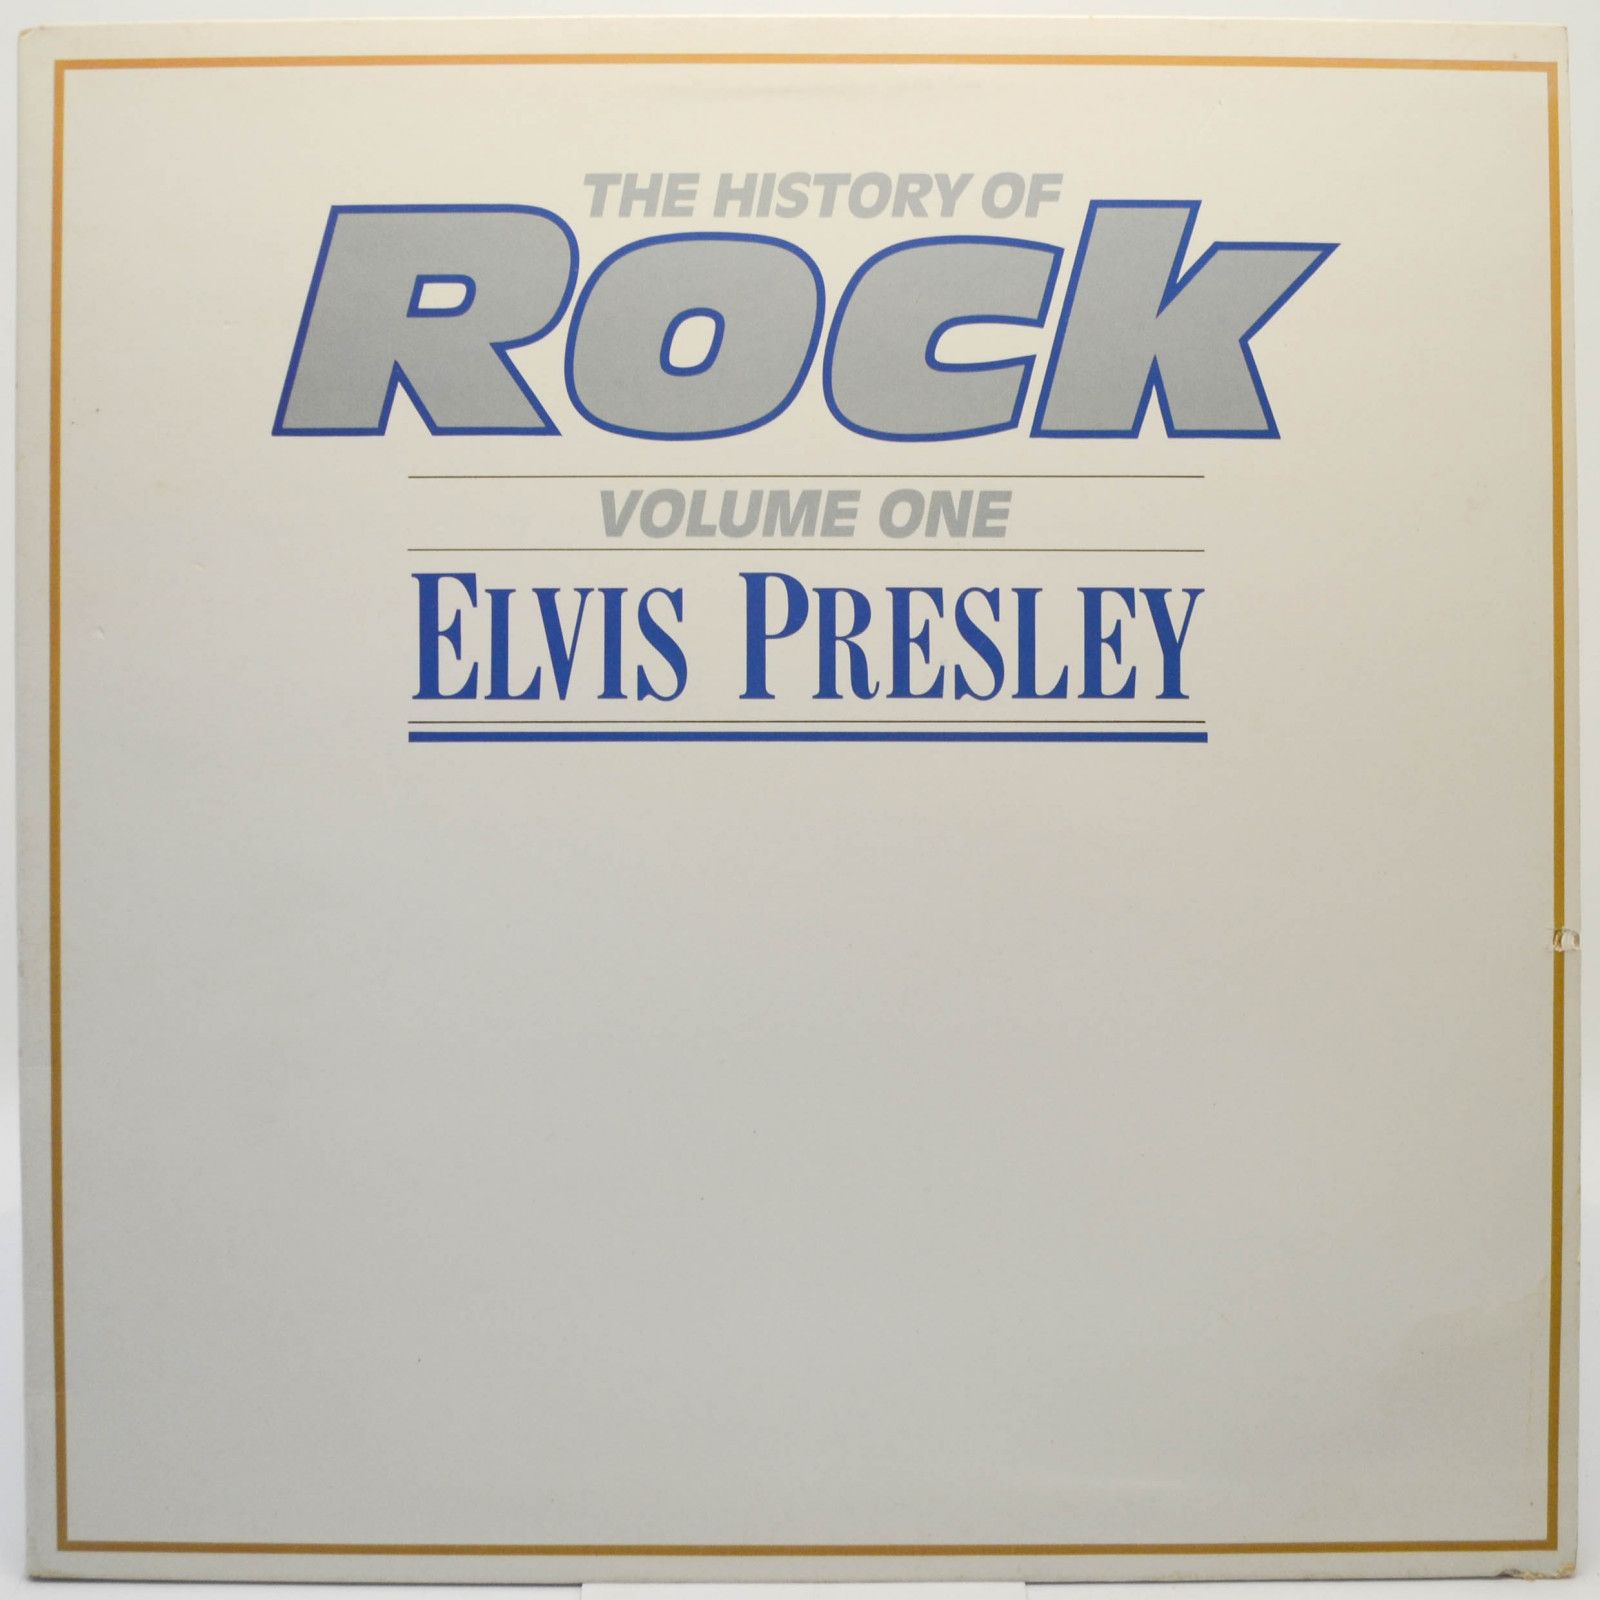 Elvis Presley — The History Of Rock (Volume One) (UK), 1981